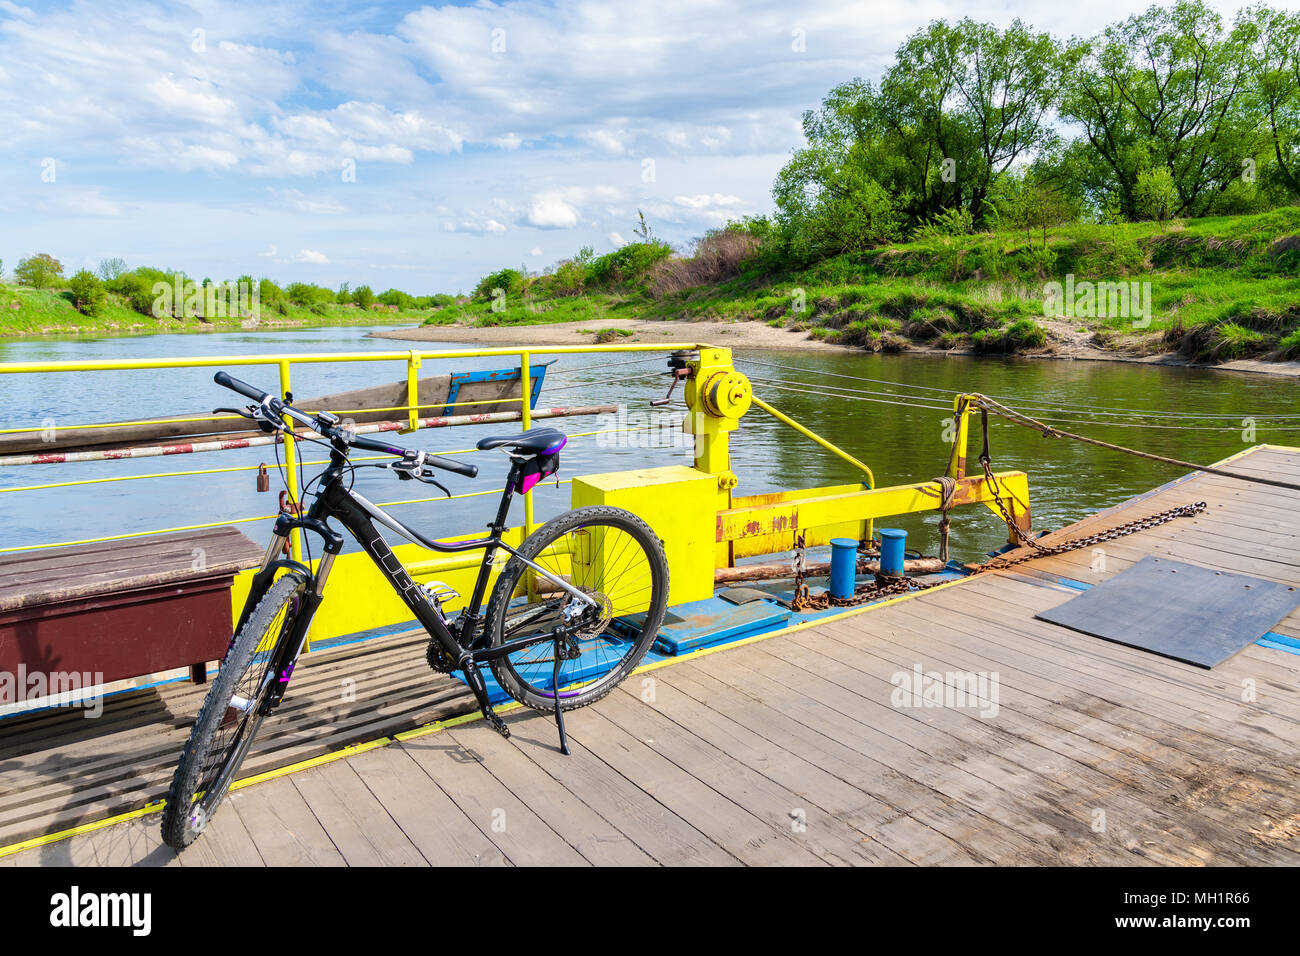 La rivière Vistule, Pologne - Apr 28, 2018 : vtt gratuit sur ferry le transporter à travers la rivière Vistule au printemps journée ensoleillée. Le vélo est très pop Banque D'Images